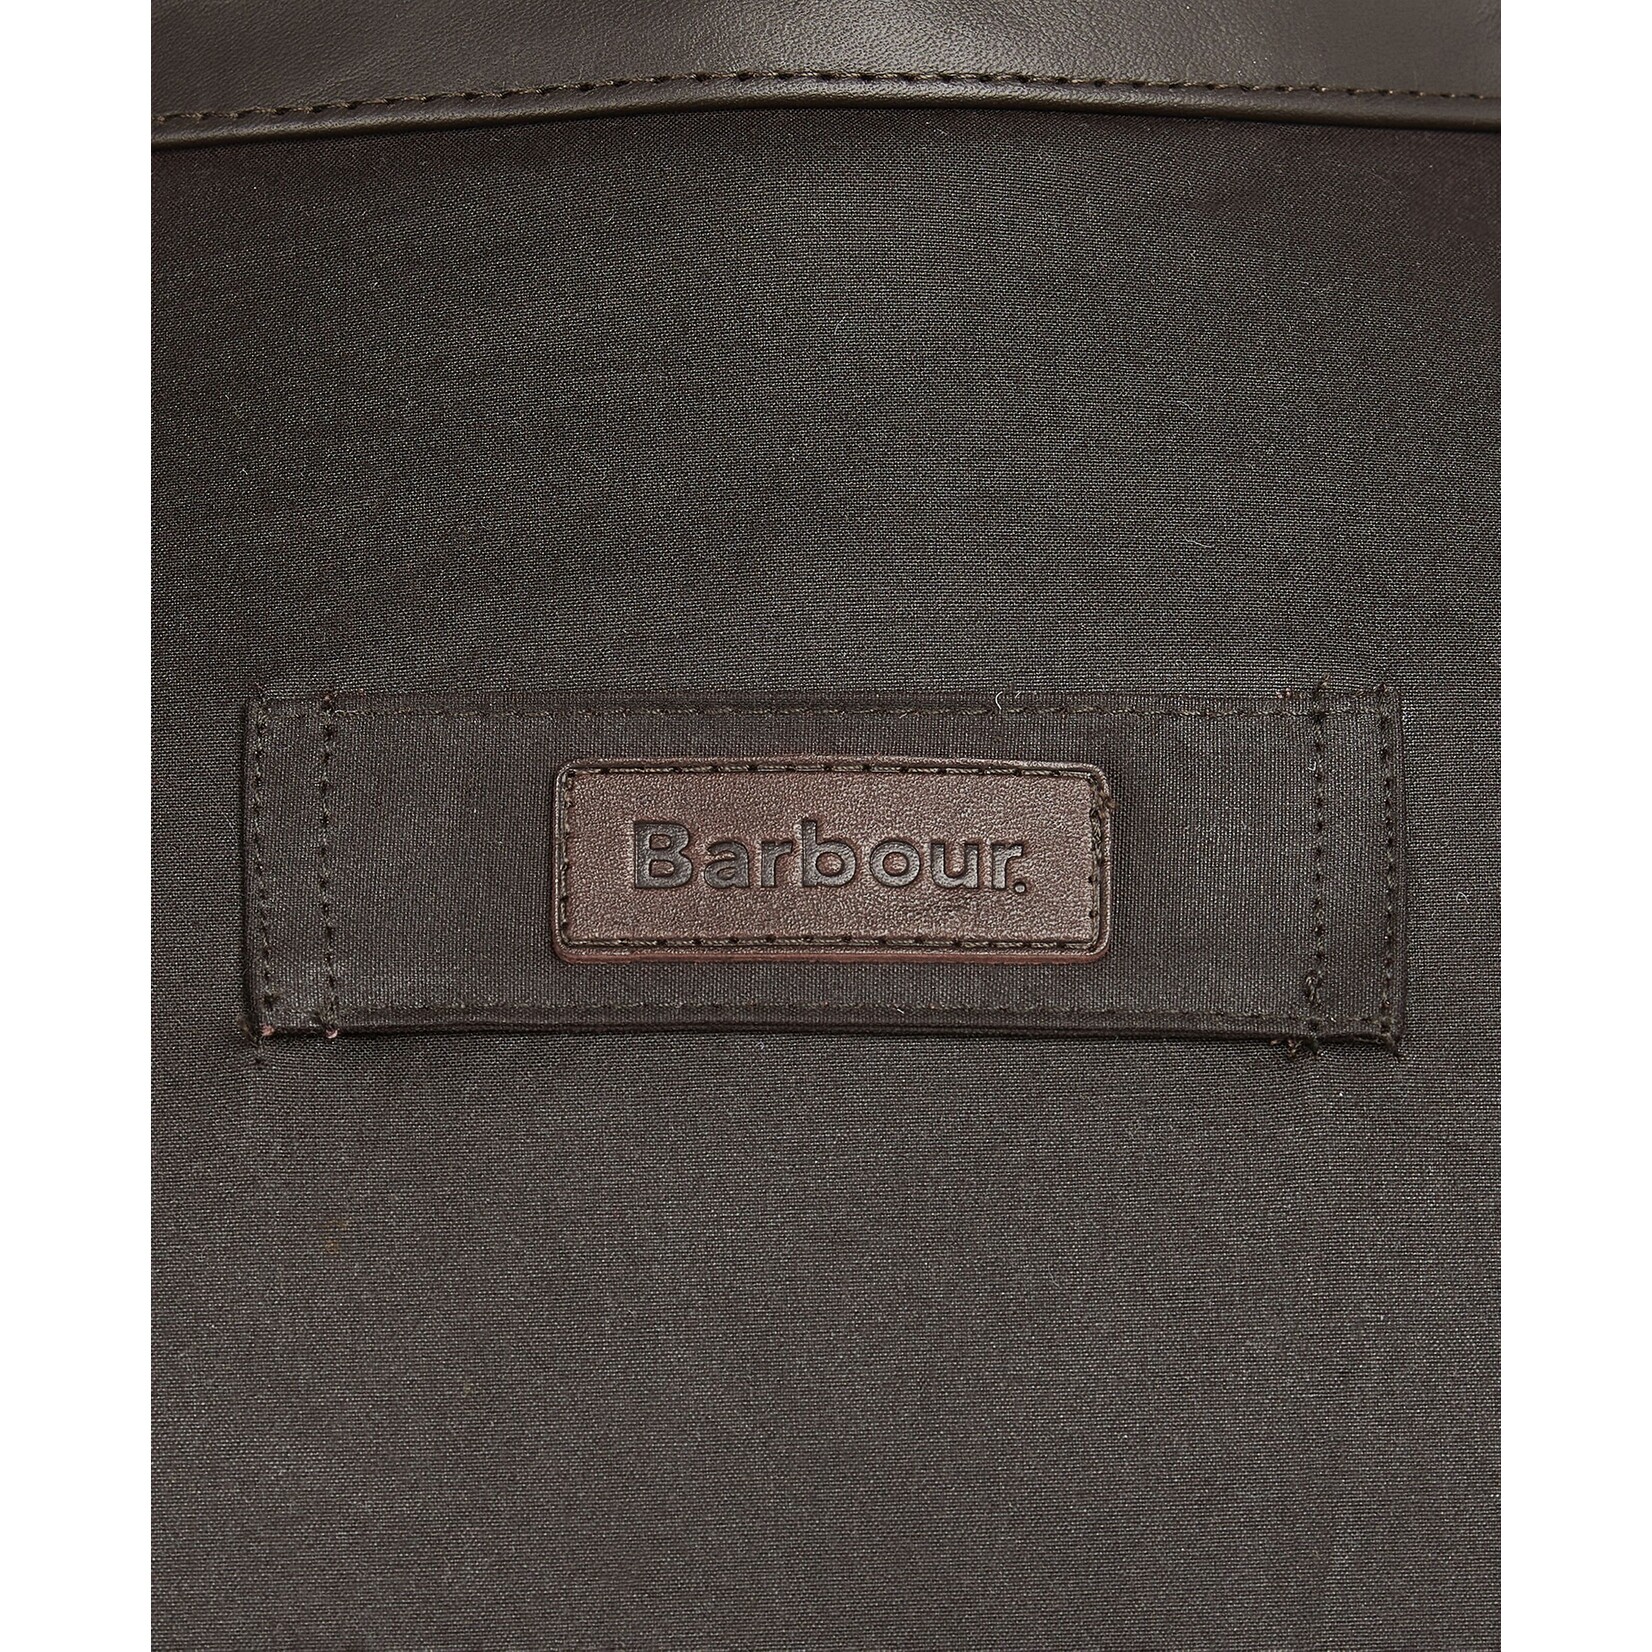 Barbour Men's Prestbury Wax Jacket